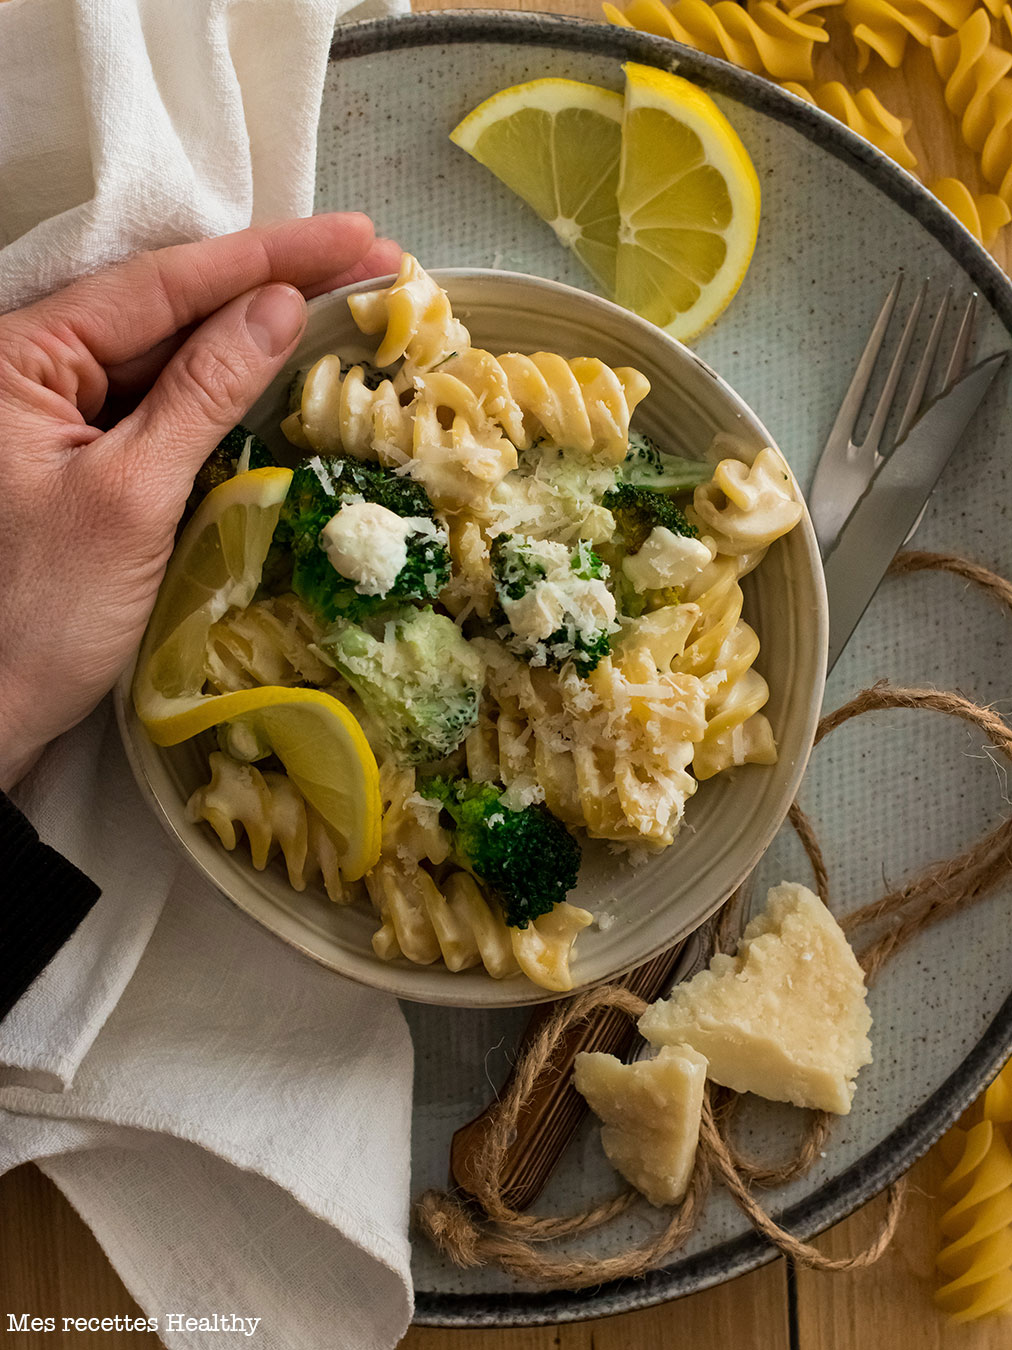 recette healthy-pate au brocolis-legume-fromage-parmesan